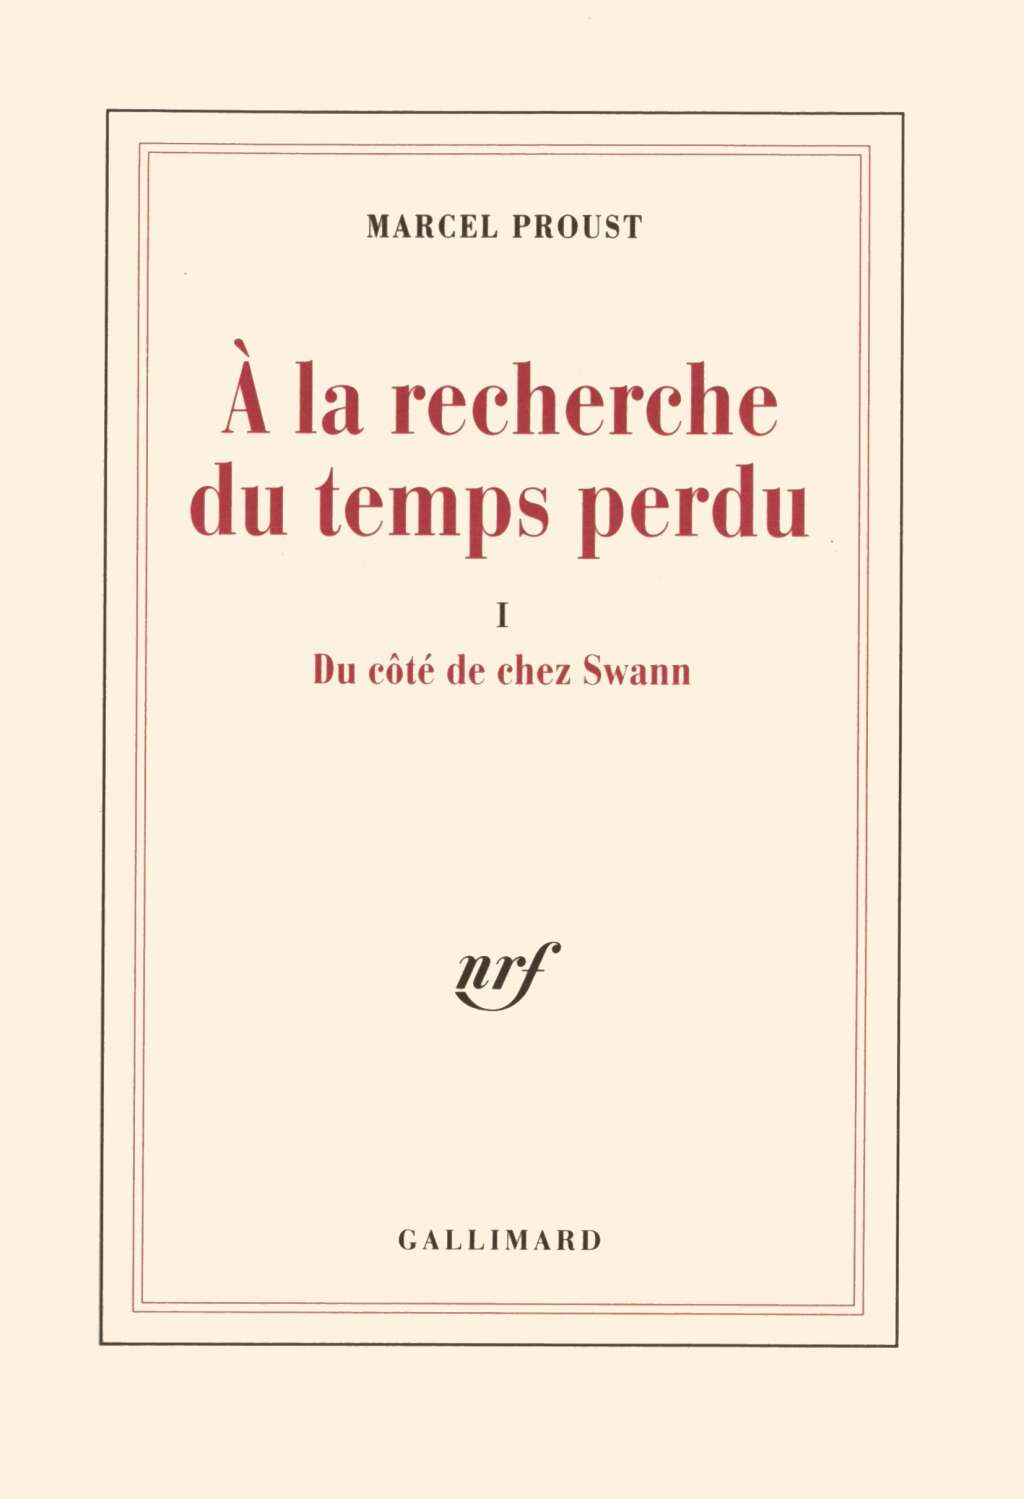 Réponse: "À la recherche du temps perdu" (roman en sept tomes publiés entre 1913 et 1927) de Marcel Proust